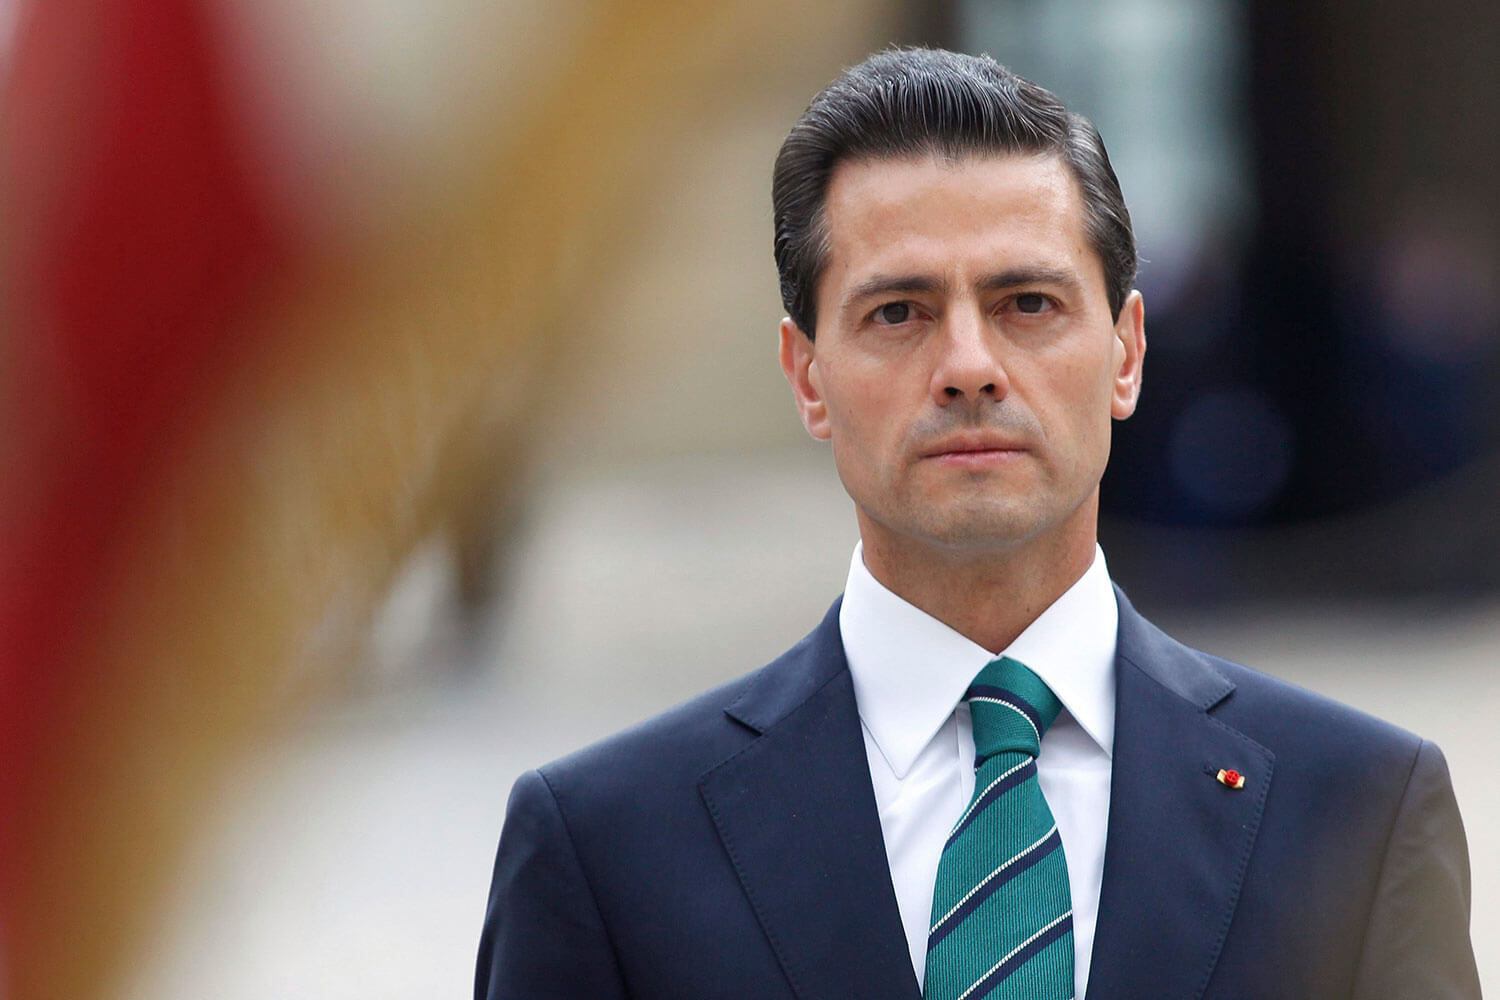 El presidente mexicano, Enrique Peña Nieto, dijo que "lamento y repruebo la decisión de EE.UU de continuar la construcción de un muro que lejos de unirnos, nos divide".